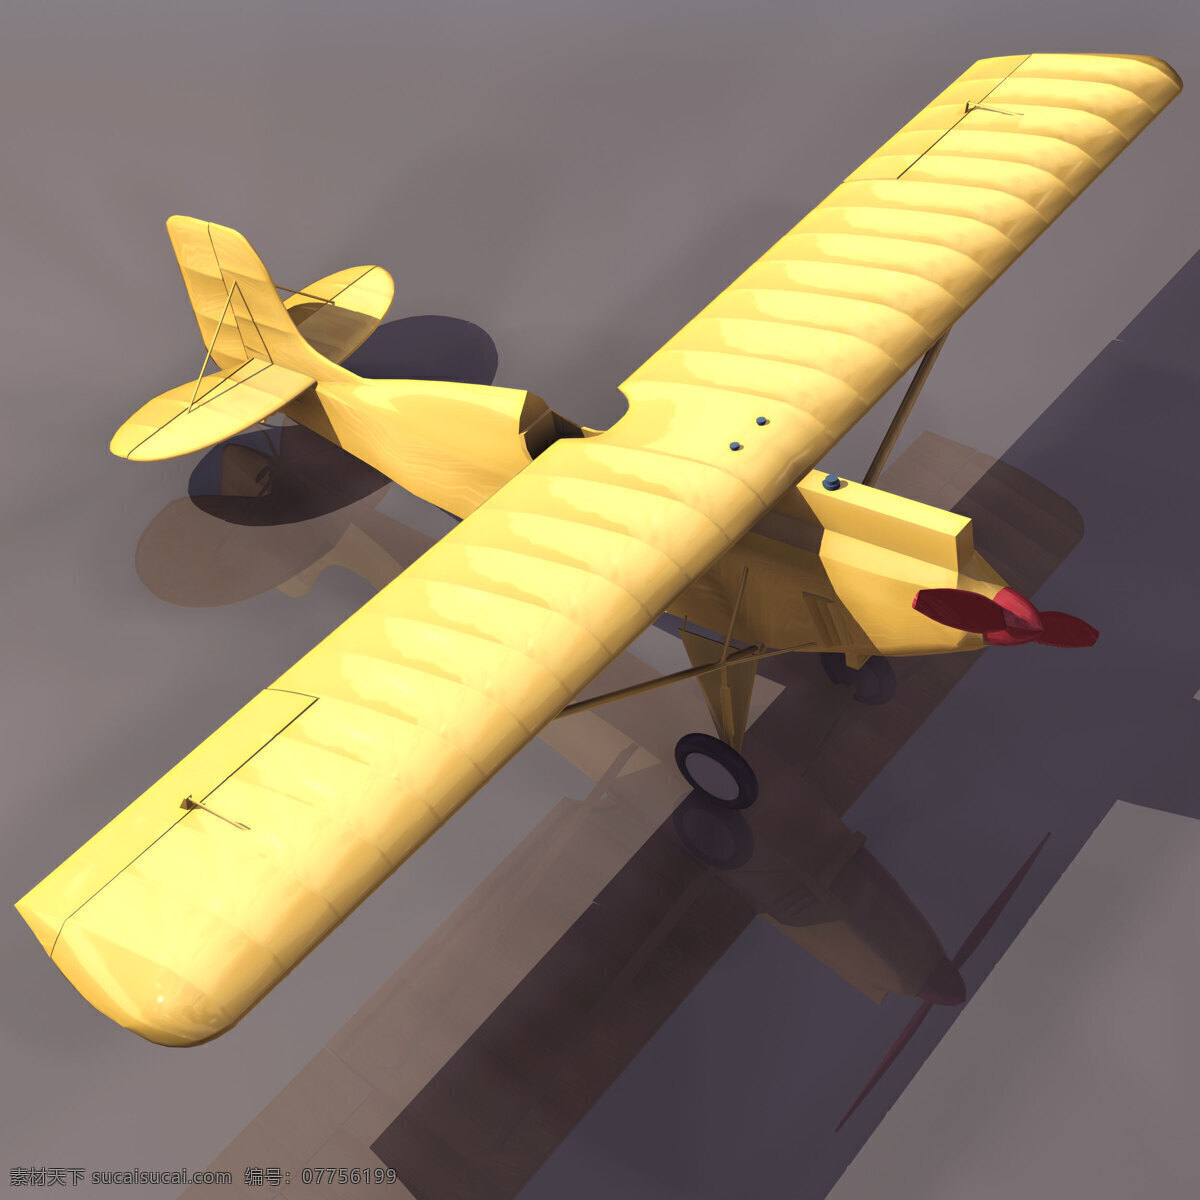 民用 私人 飞机模型 旅行 航模 3d模型素材 其他3d模型